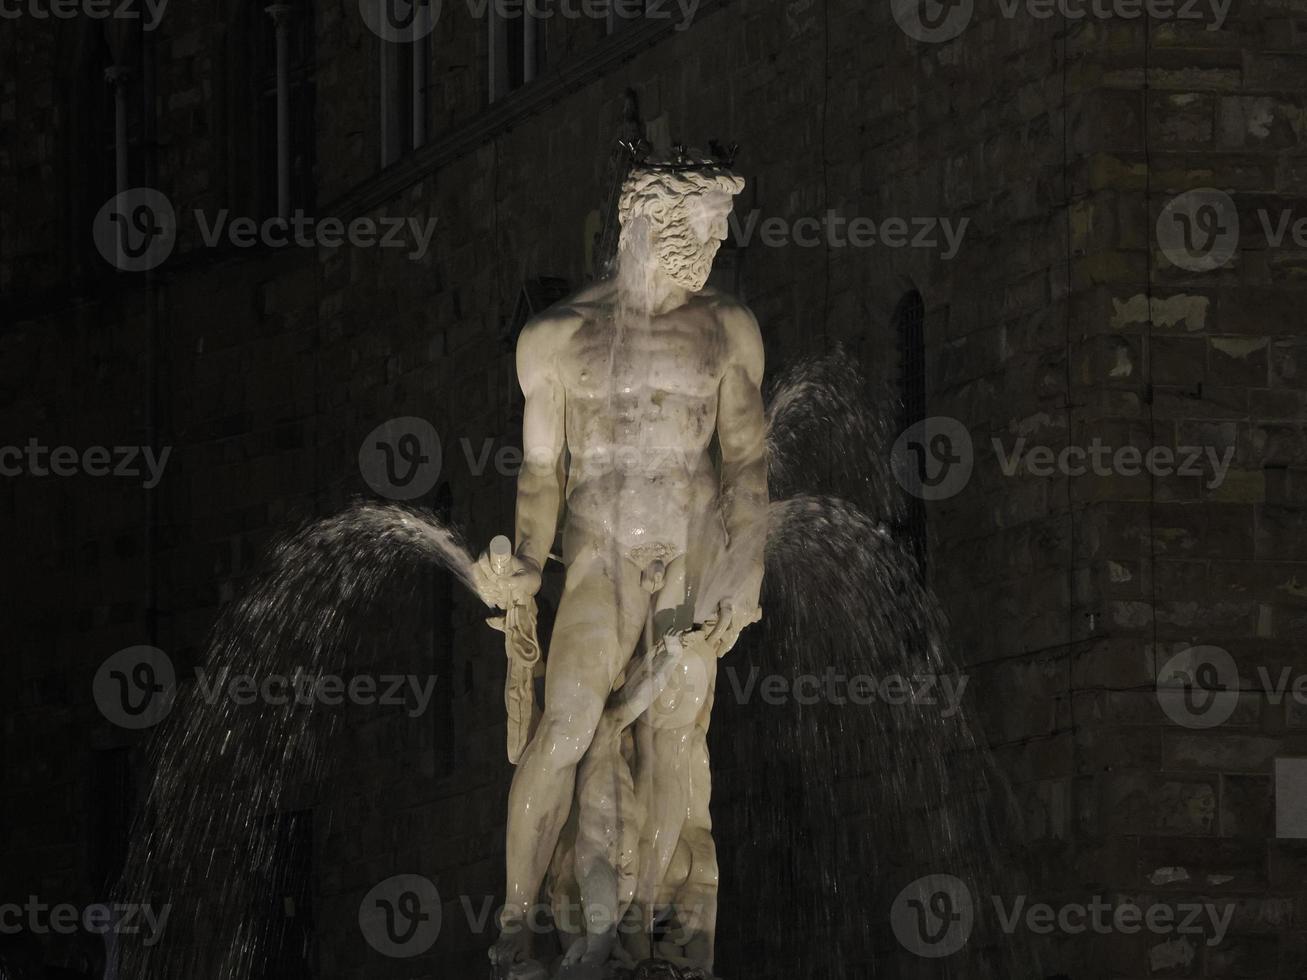 florence neptune statue della signoria place at night photo